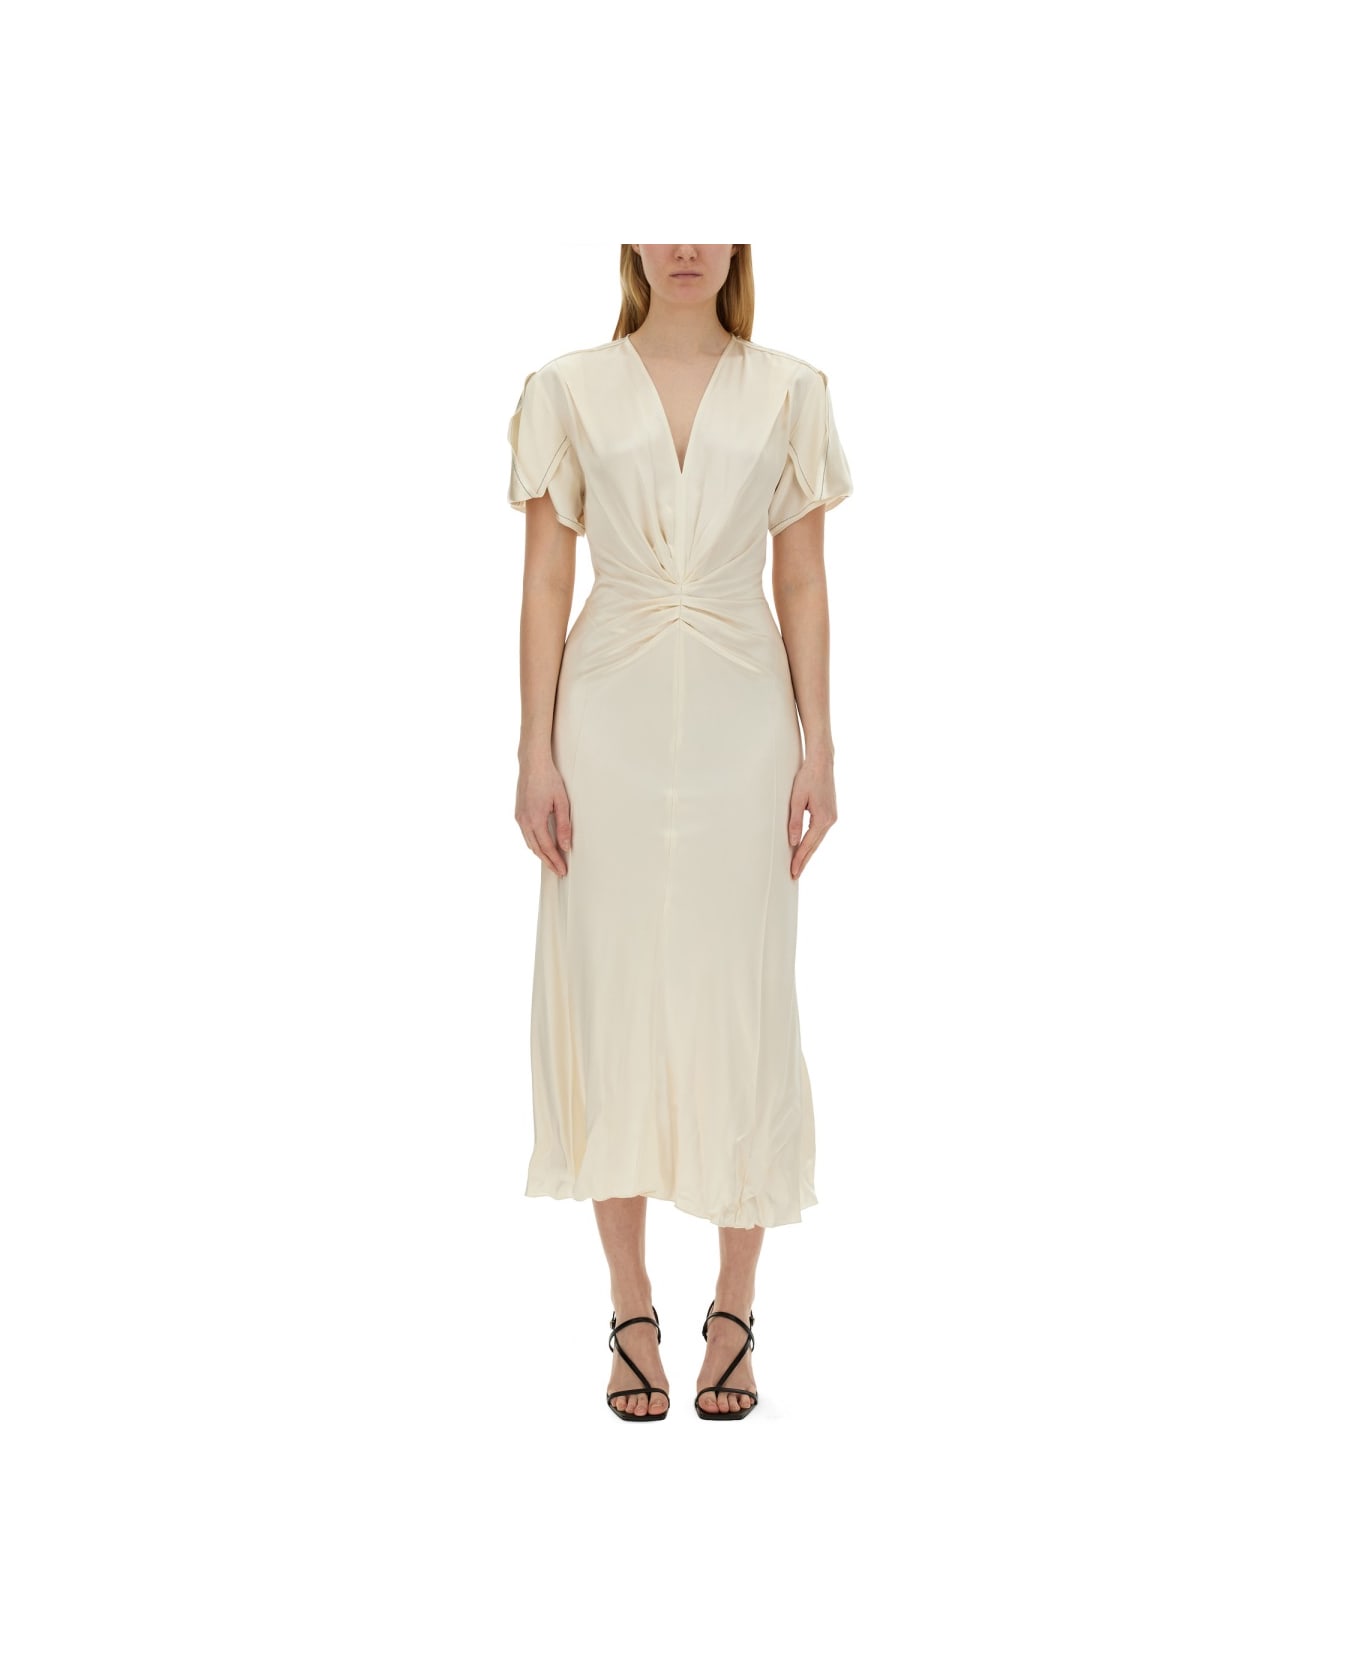 Victoria Beckham Midi Dress - White